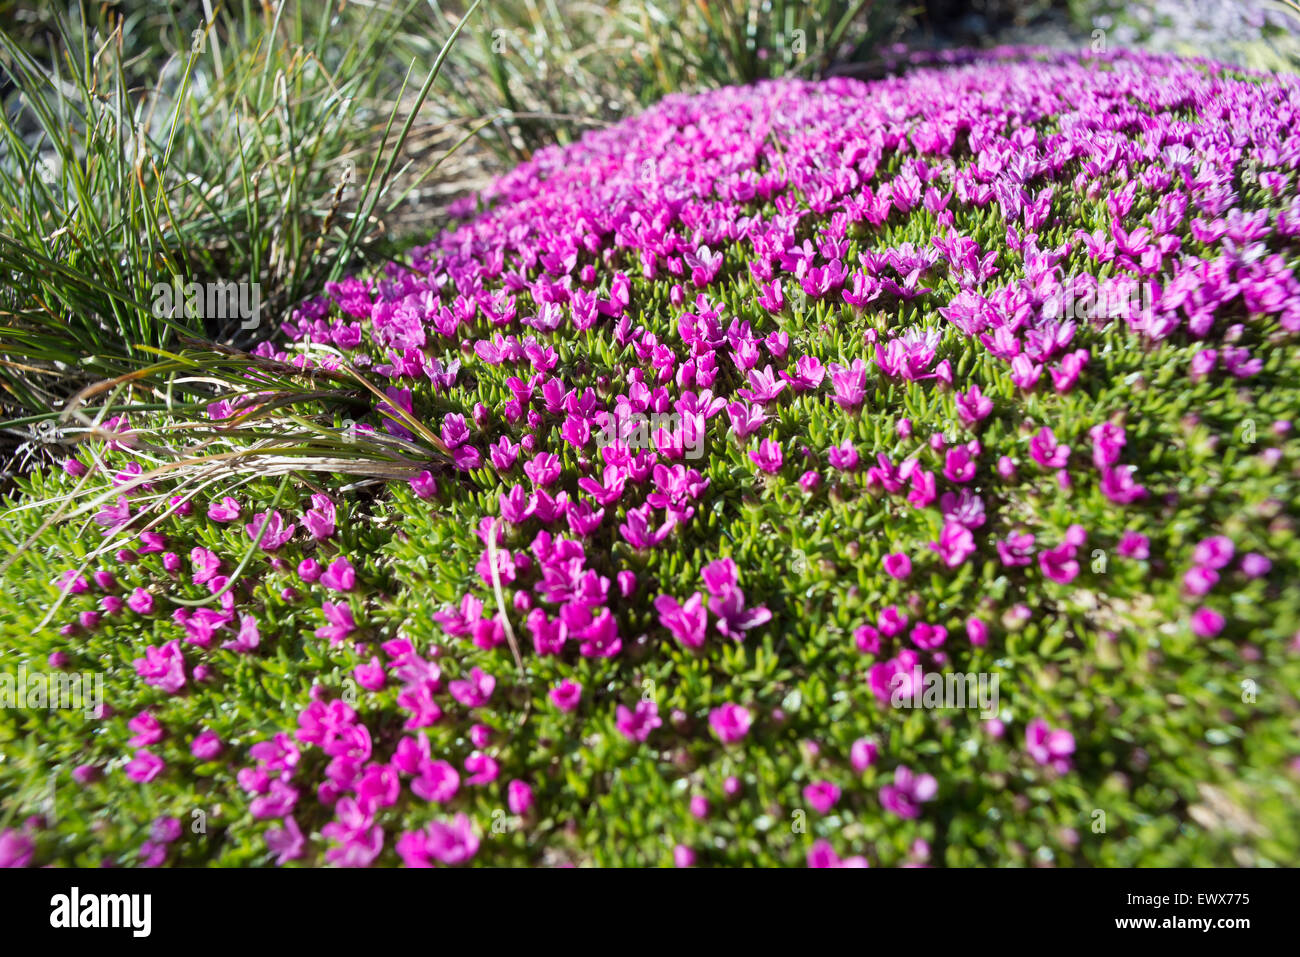 Plan Macro sur les petites fleurs violettes alpin (Silene acaulis) sur tapis vert naturel à haute altitude. Selective focus sur le centre. Banque D'Images